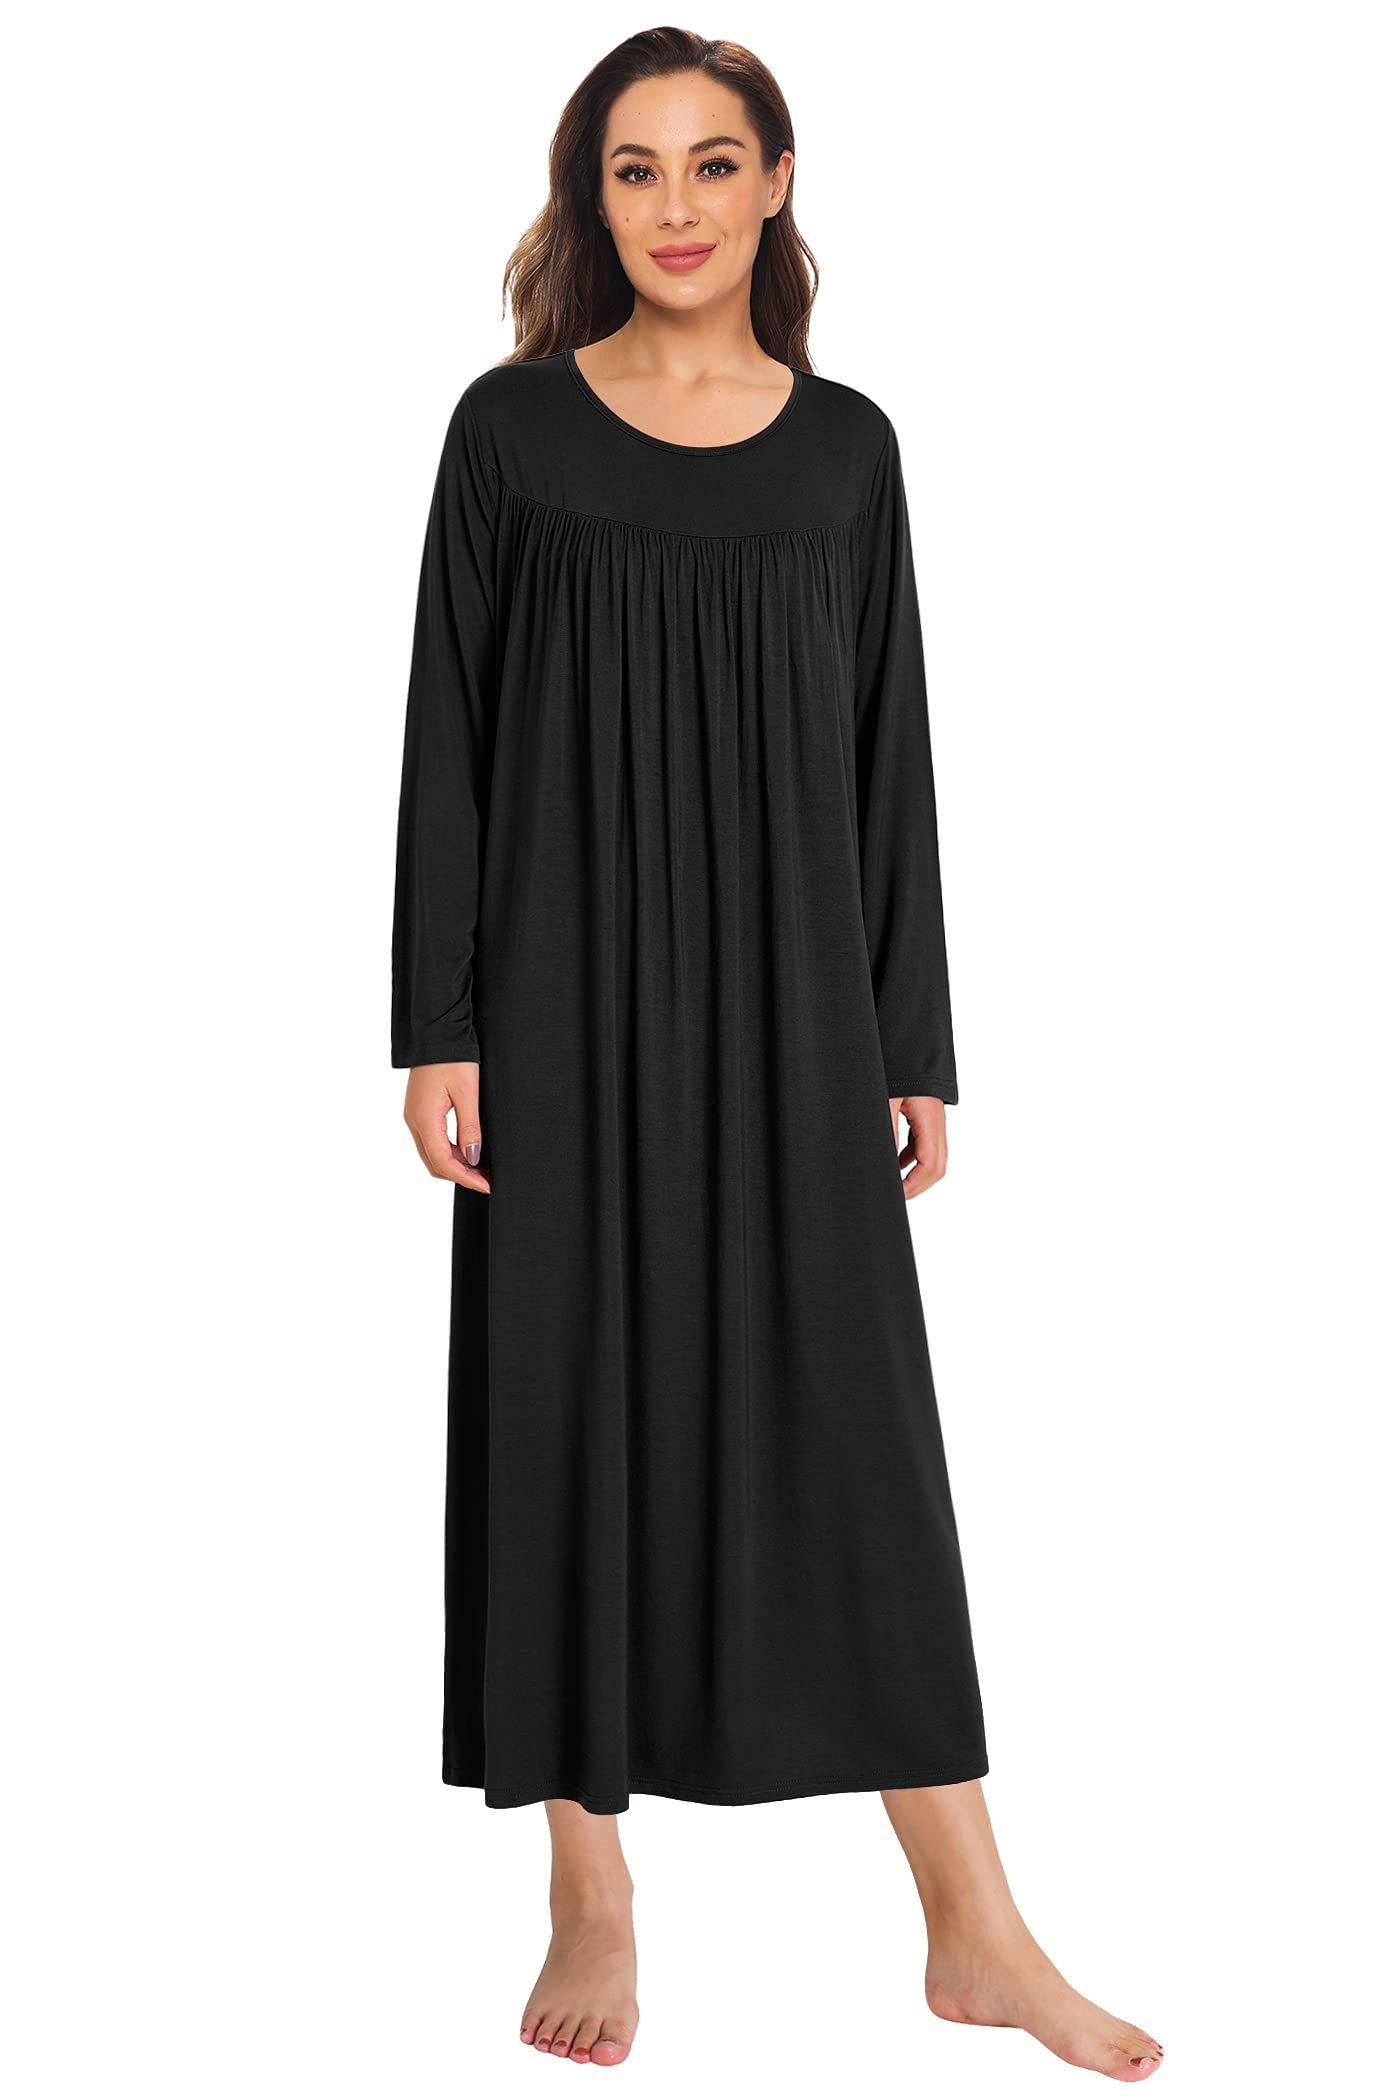 Women's Soft Bamboo Viscose Long Sleeves Nightgown - Latuza